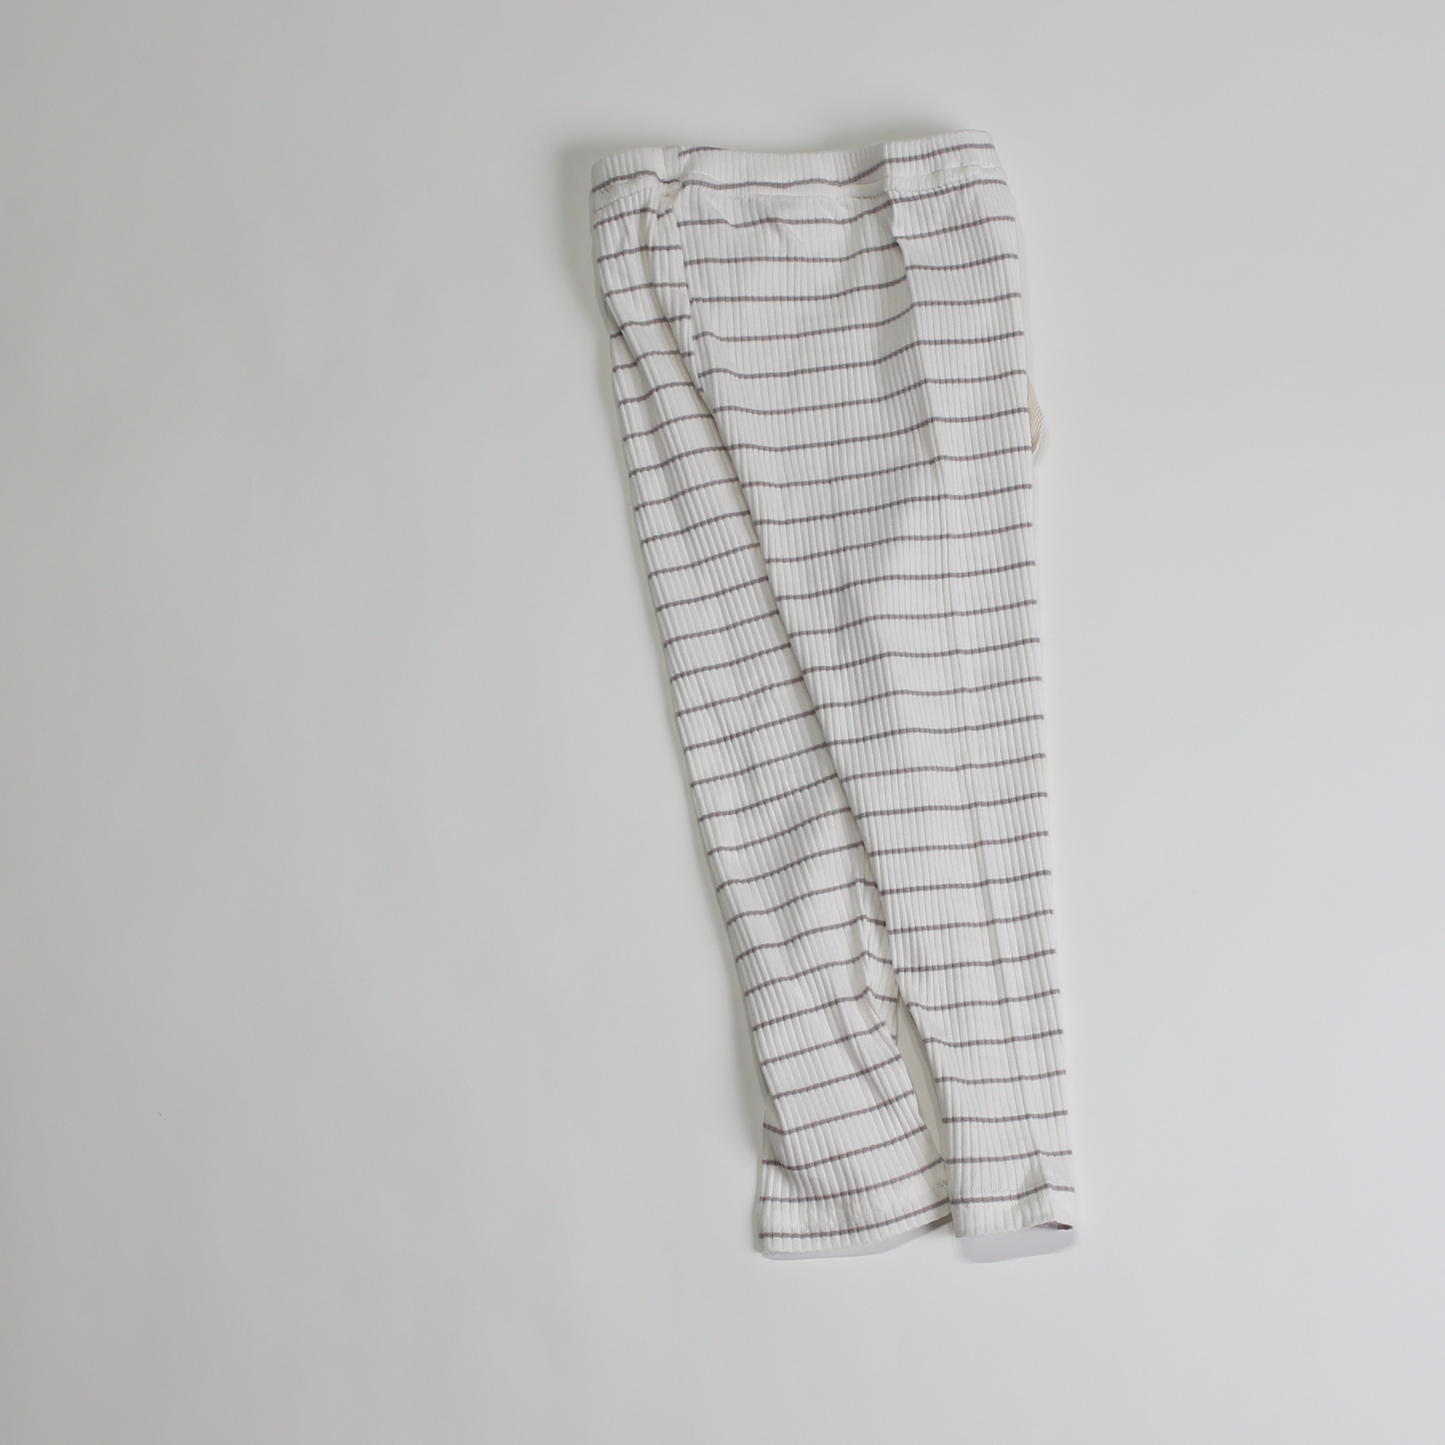 リブ コットン レギンス / lib cotton leggins (こども服) - kids clothes shop GUZUGUZU